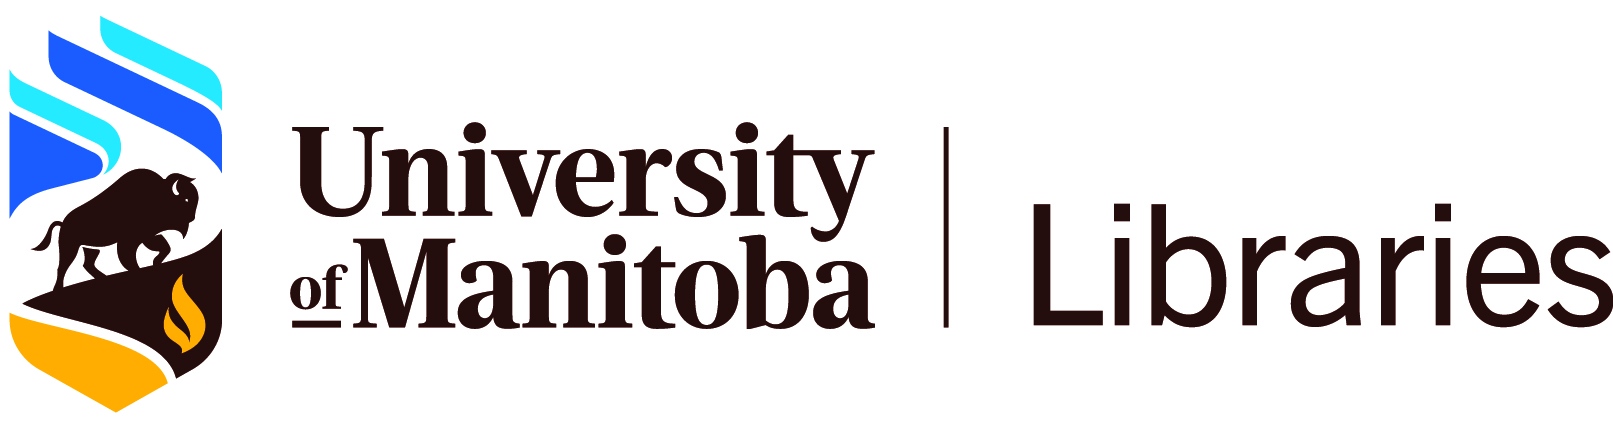 University of Manitoba Libraries logo